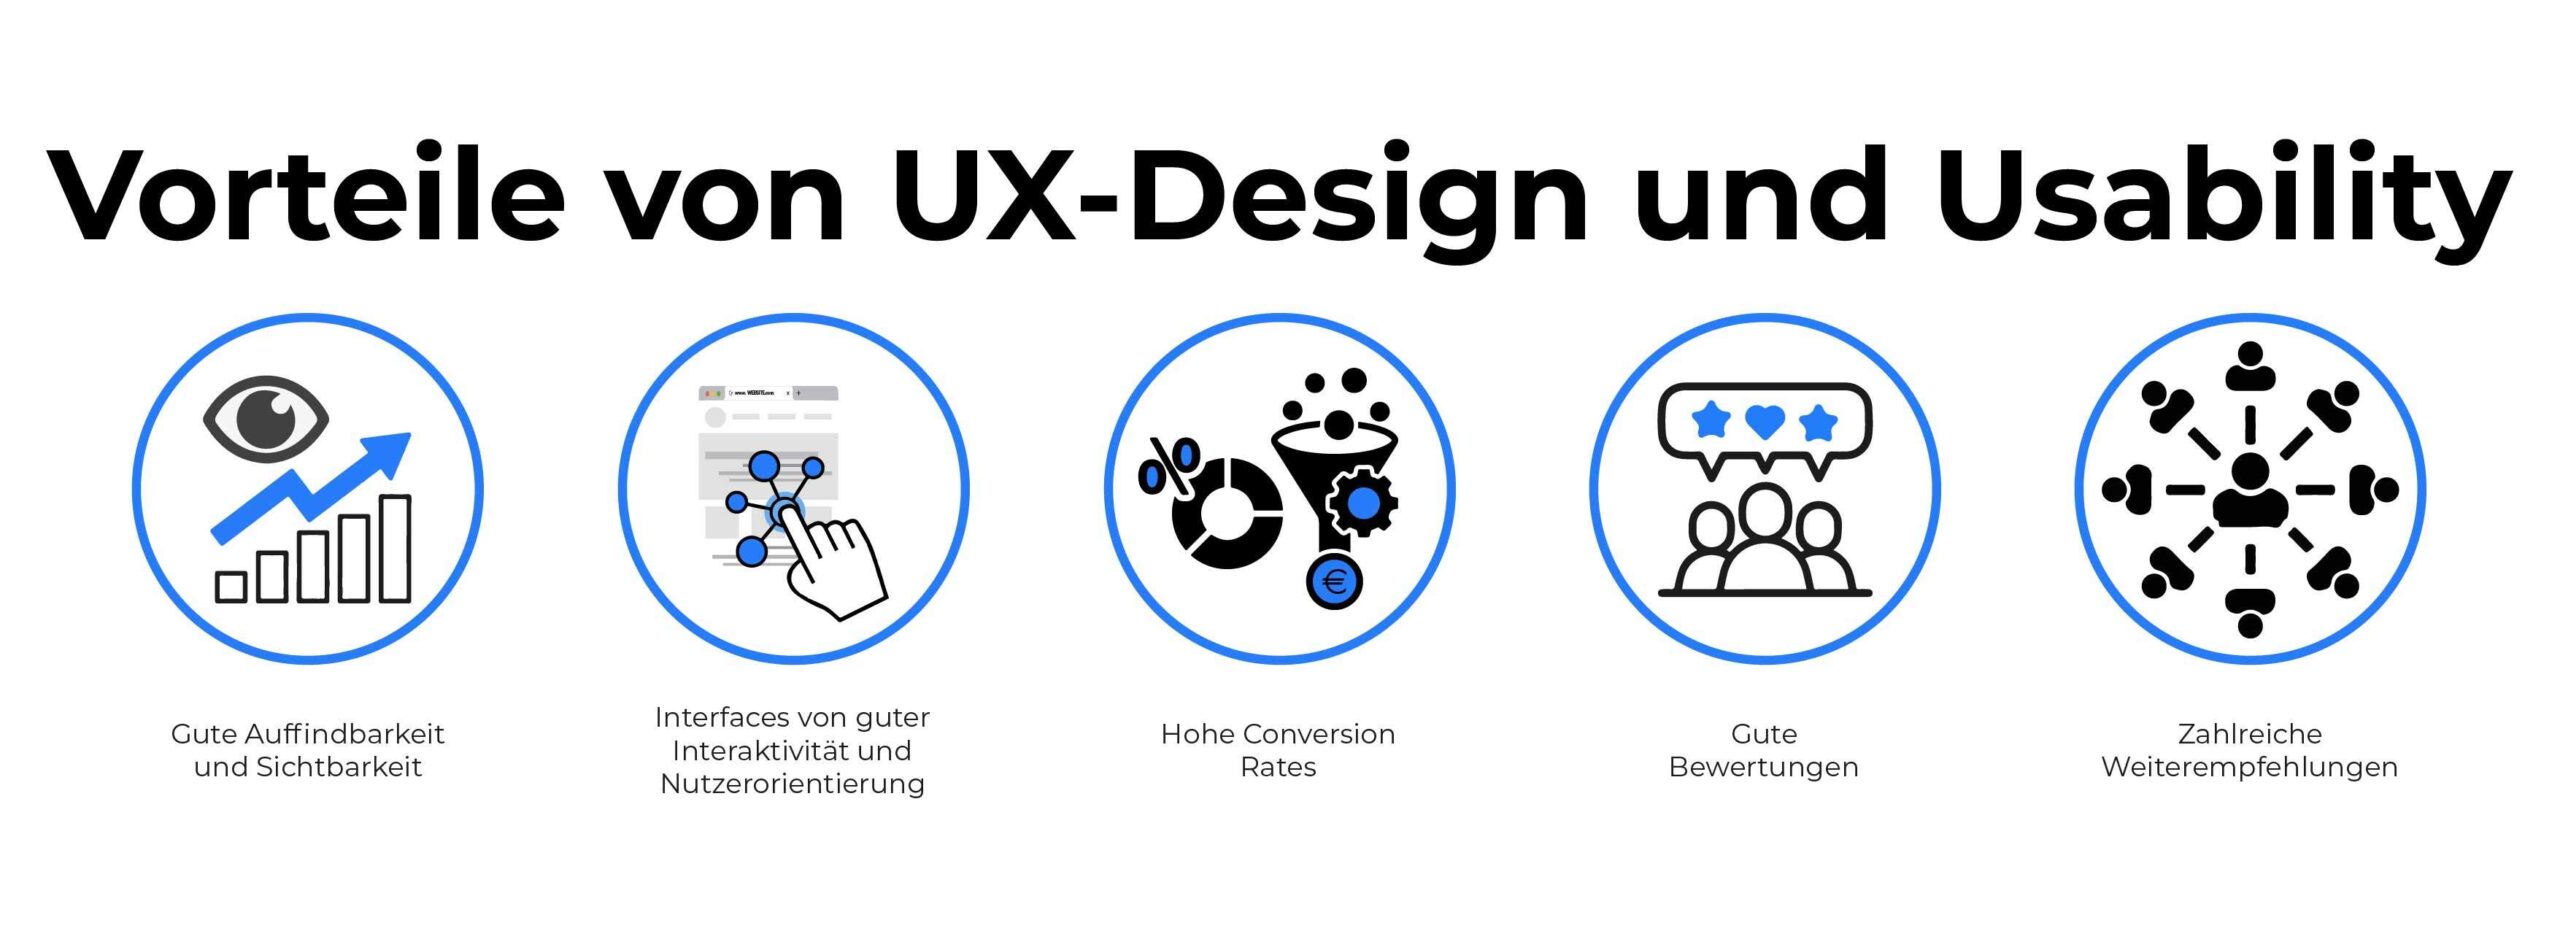 SEO Usability-Vorteile an UX